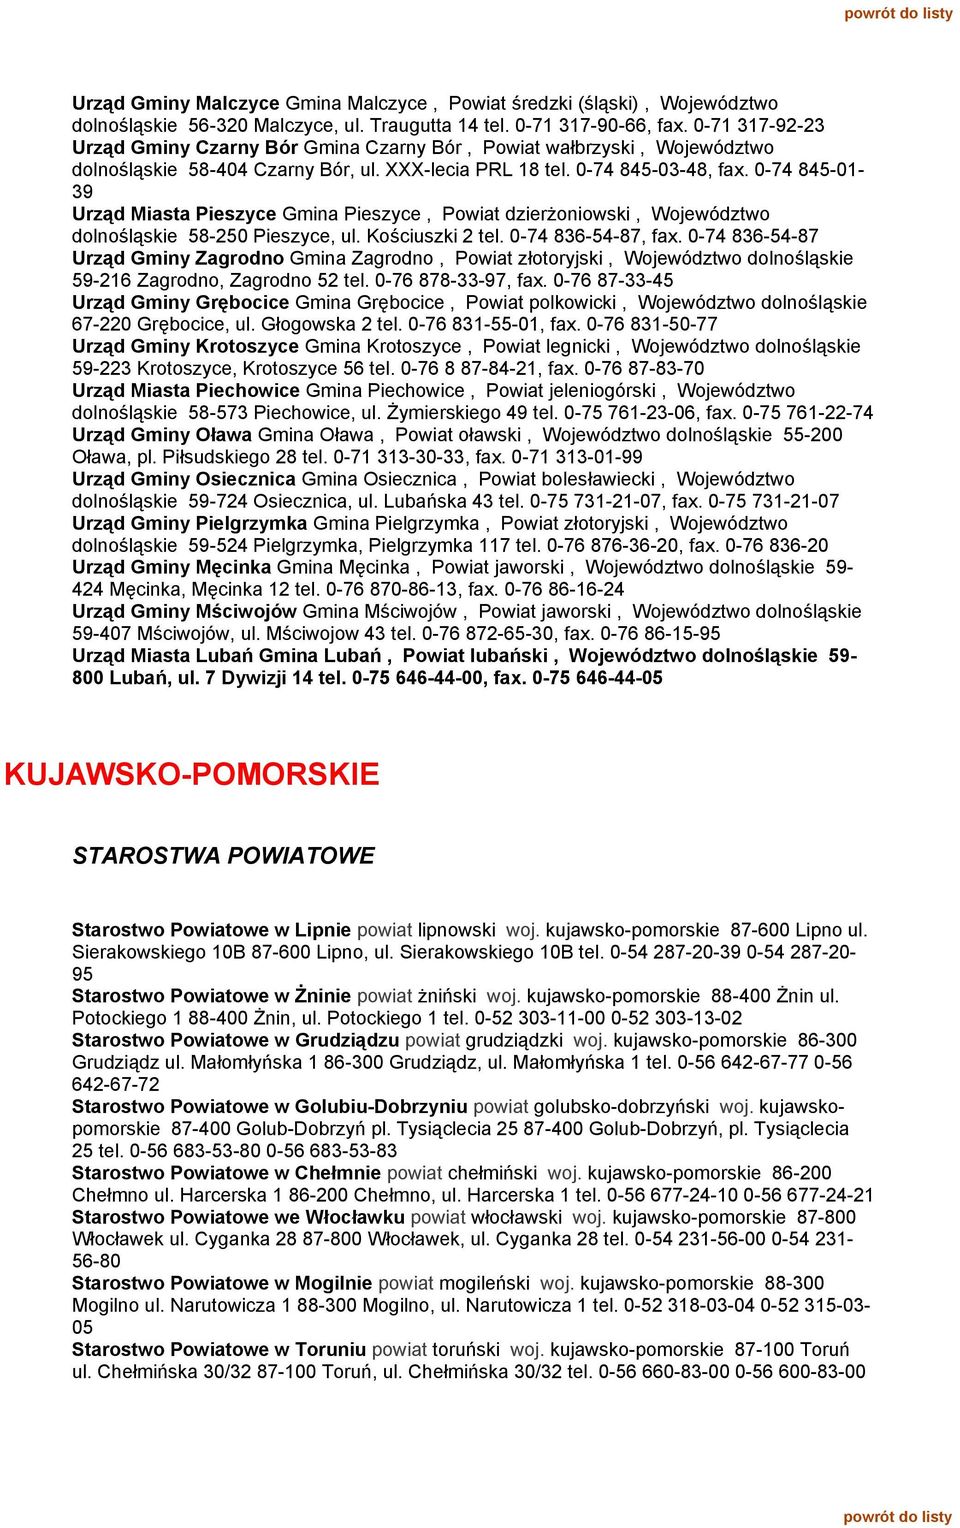 0-74 845-01- 39 Urząd Miasta Pieszyce Gmina Pieszyce, Powiat dzierżoniowski, Województwo dolnośląskie 58-250 Pieszyce, ul. Kościuszki 2 tel. 0-74 836-54-87, fax.